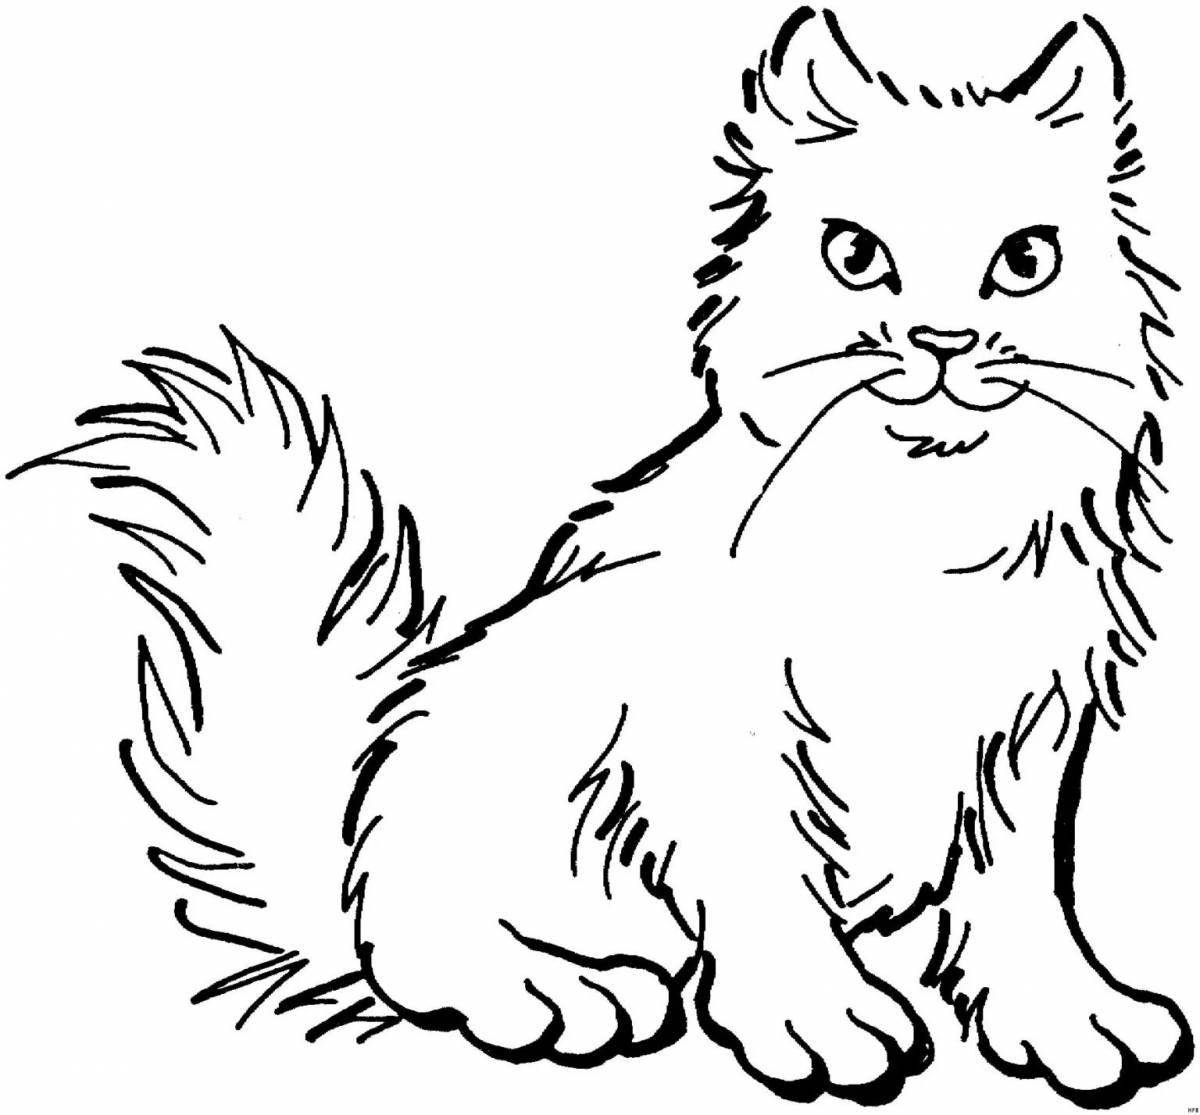 Раскраска пушистый черно-белый кот